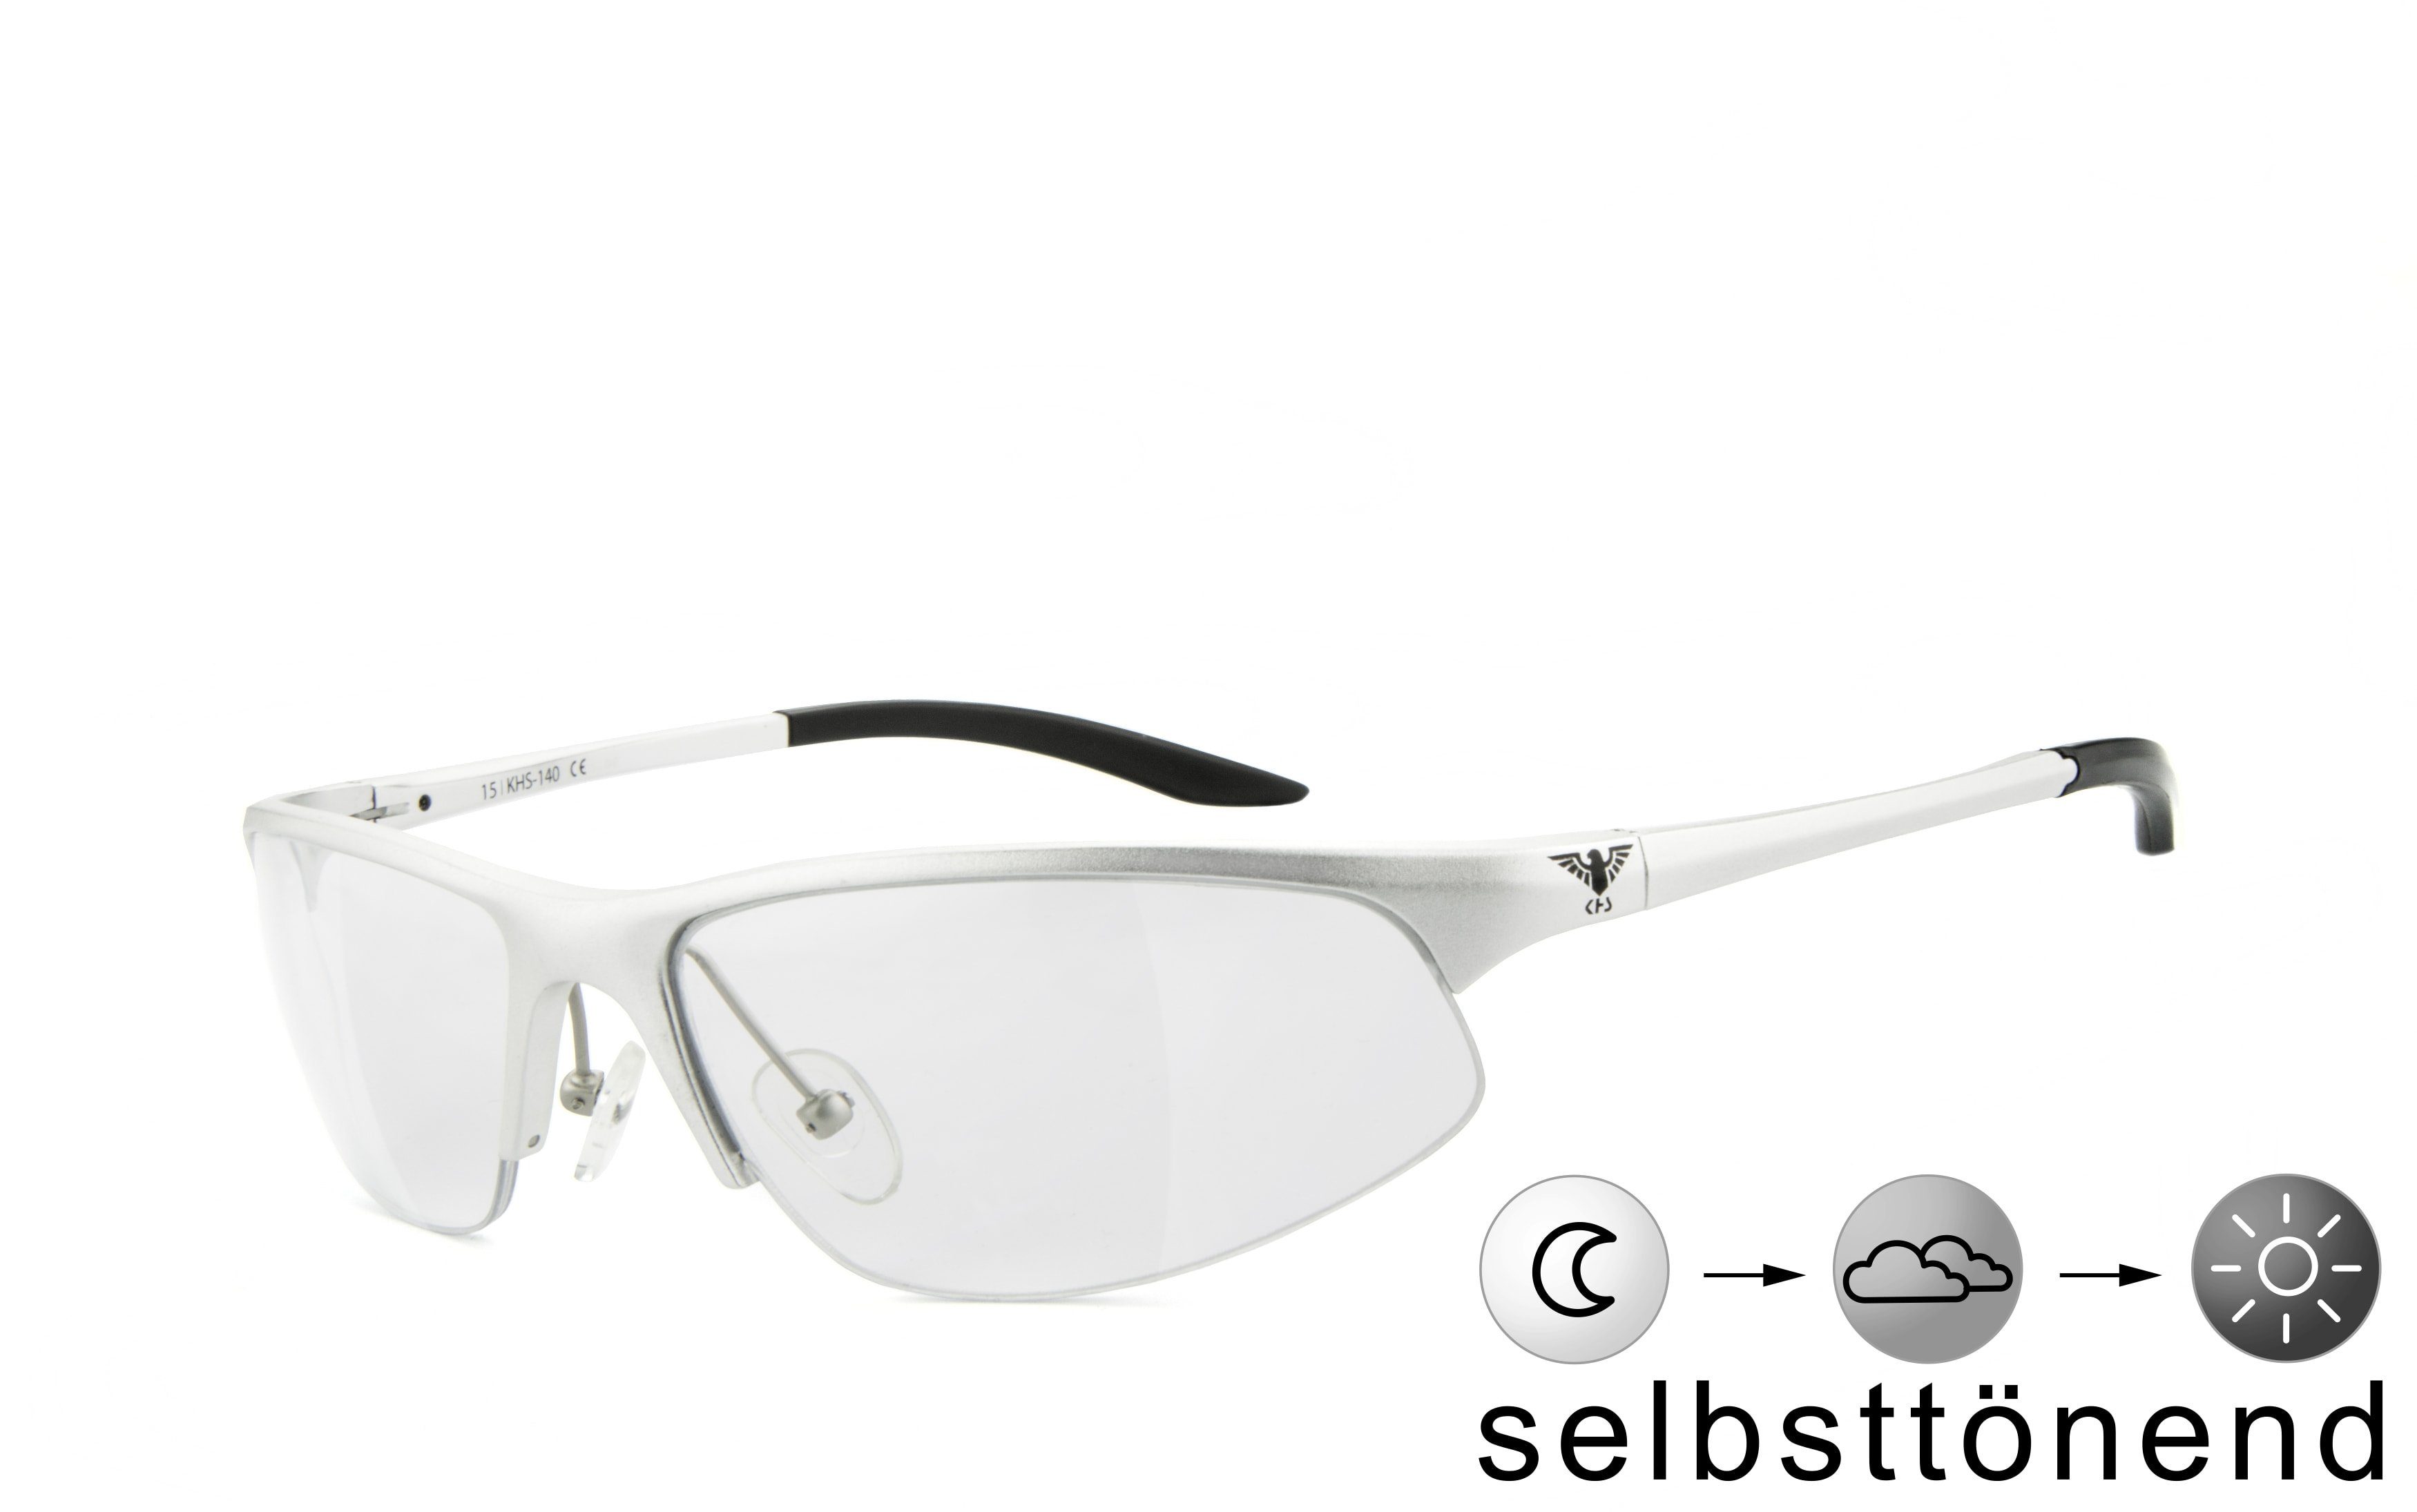 Sonnenbrille KHS Gläser KHS-140s - schnell selbsttönende selbsttönend